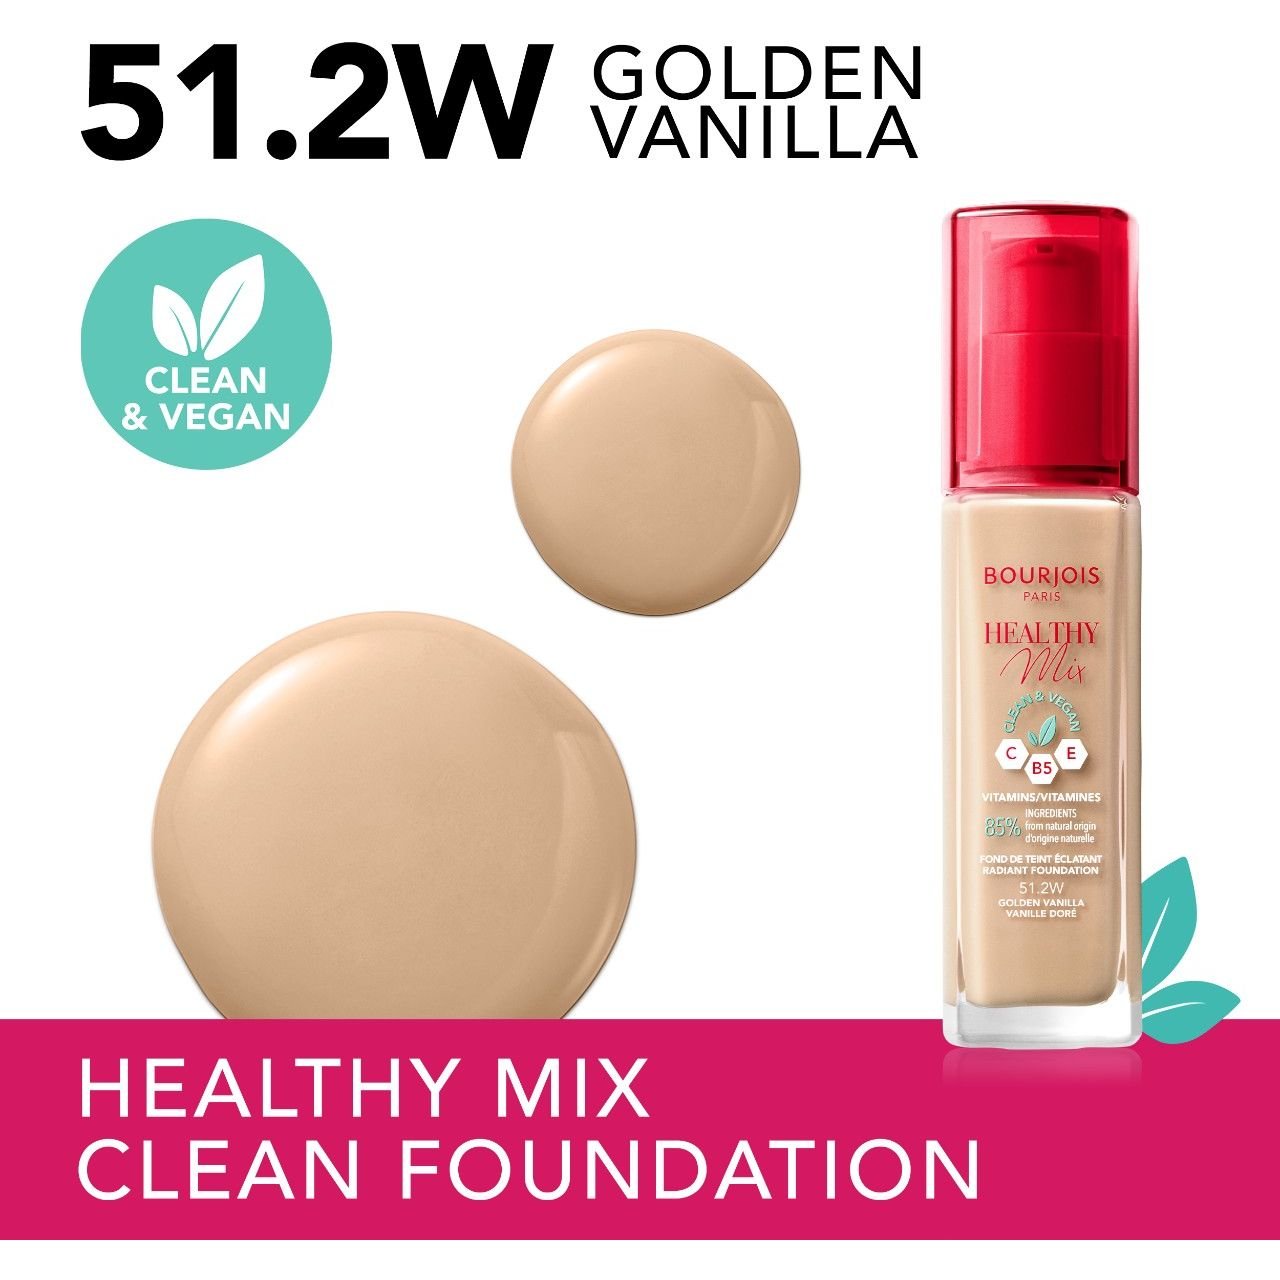 Тональная основа Bourjois Healthy Mix Clean & Vegan тон 51.2W (Golden Vanilla) 30 мл - фото 3